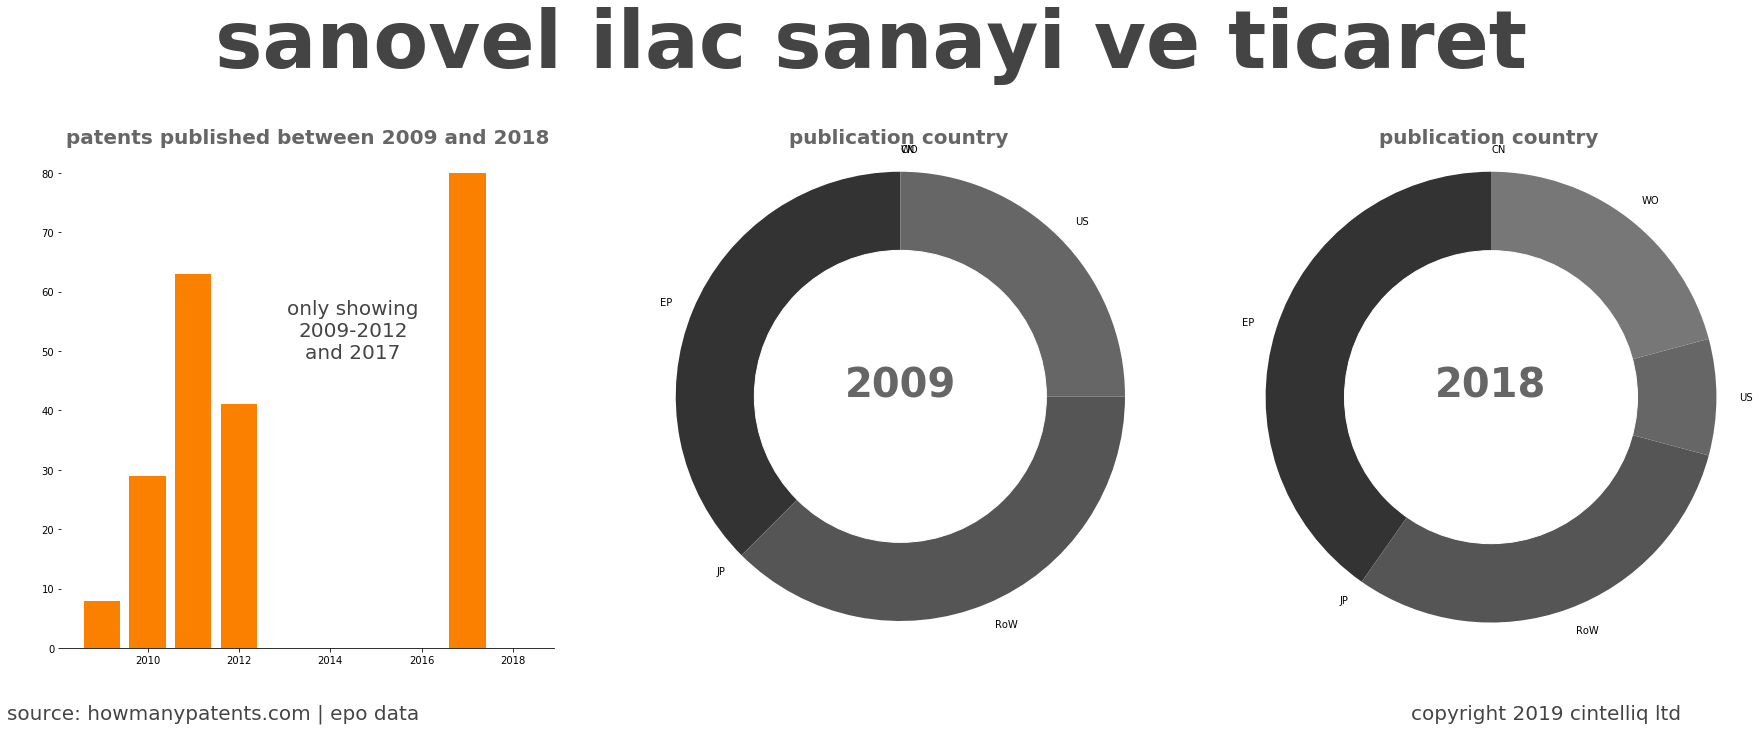 summary of patents for Sanovel Ilac Sanayi Ve Ticaret